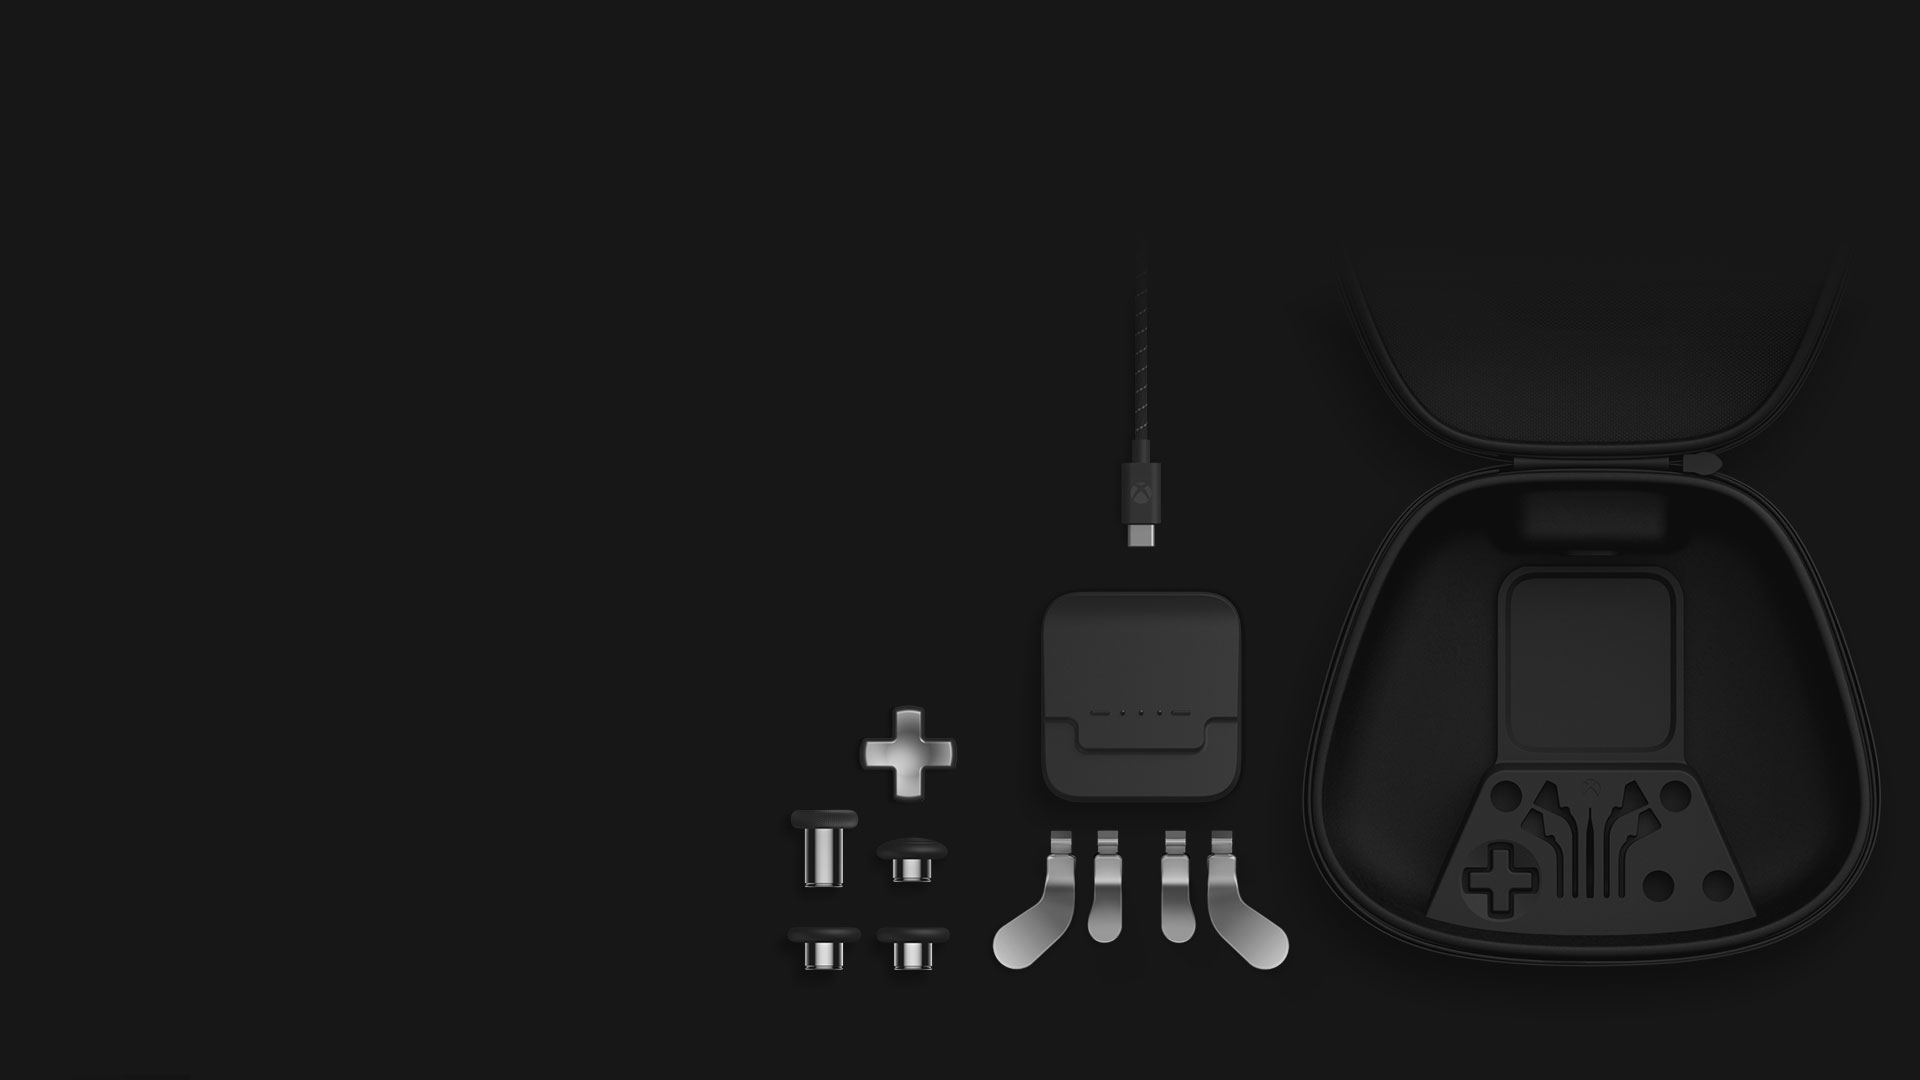 Izometrické zobrazenie obsahu kompletného balíka komponentov: pákové palcové ovládače, smerový ovládač, lopatkové pákové ovládače, dobíjací stojan, USB-C kábel a prenosné puzdro.